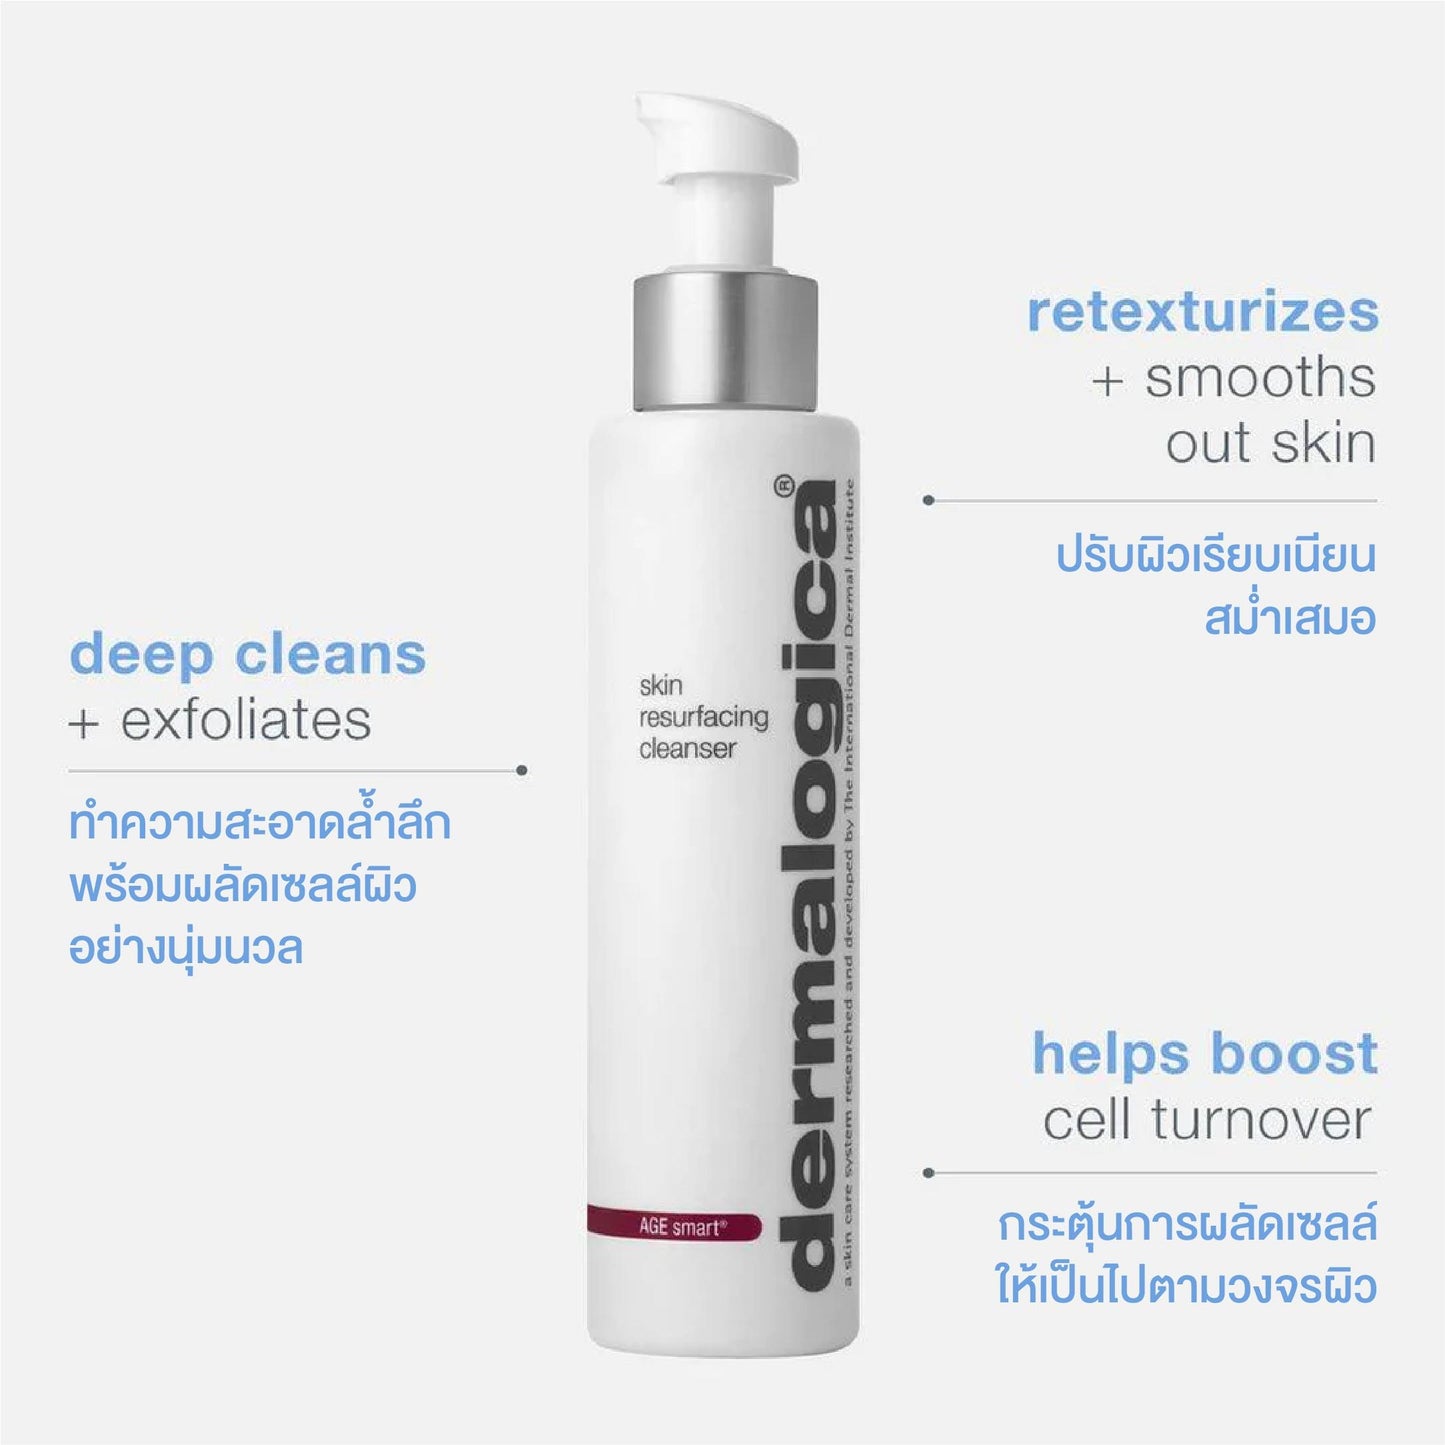 skin resurfacing cleanser - Dermalogica Thailand